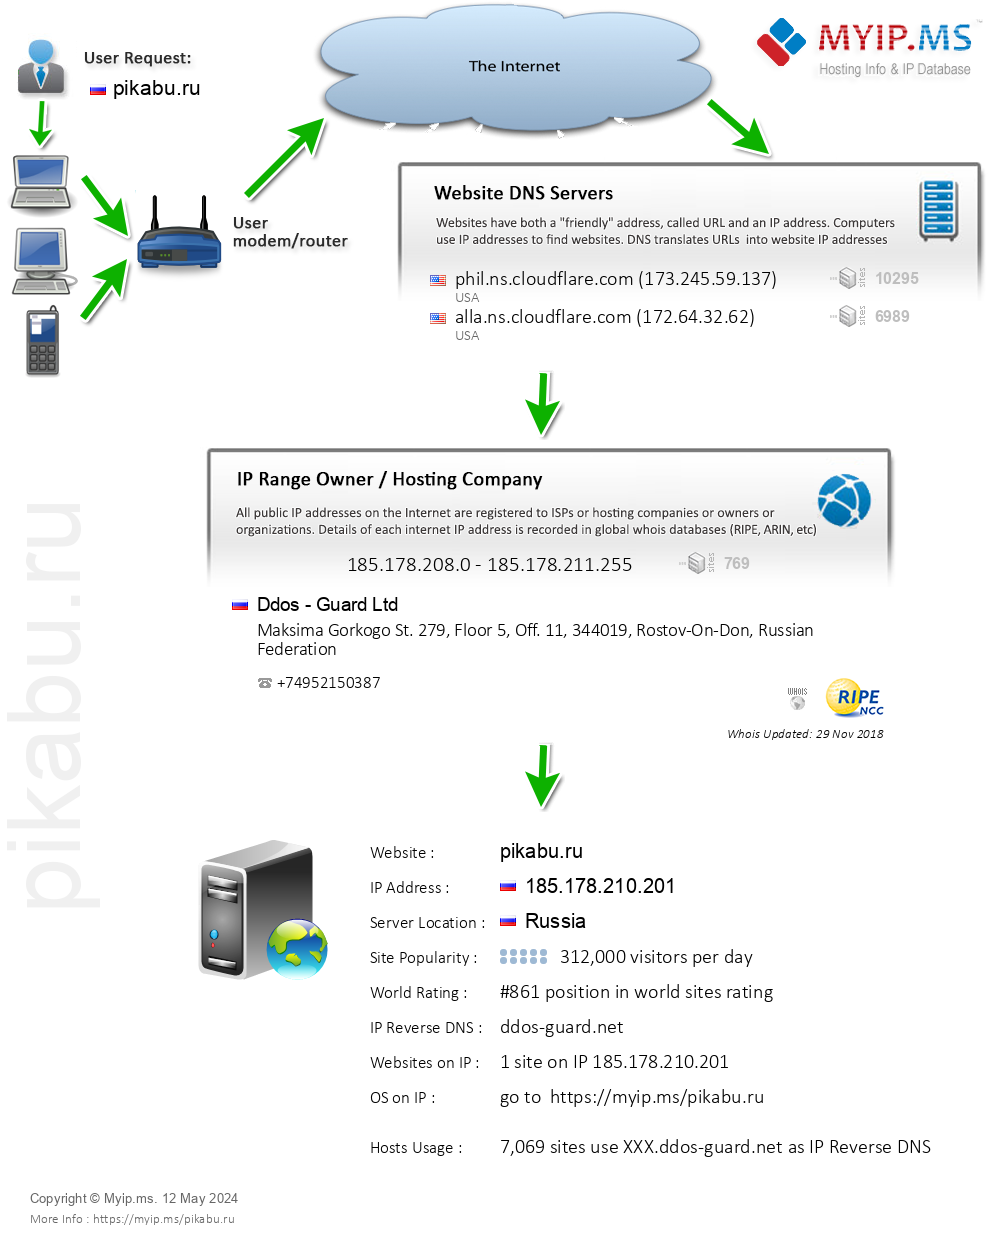 Pikabu.ru - Website Hosting Visual IP Diagram